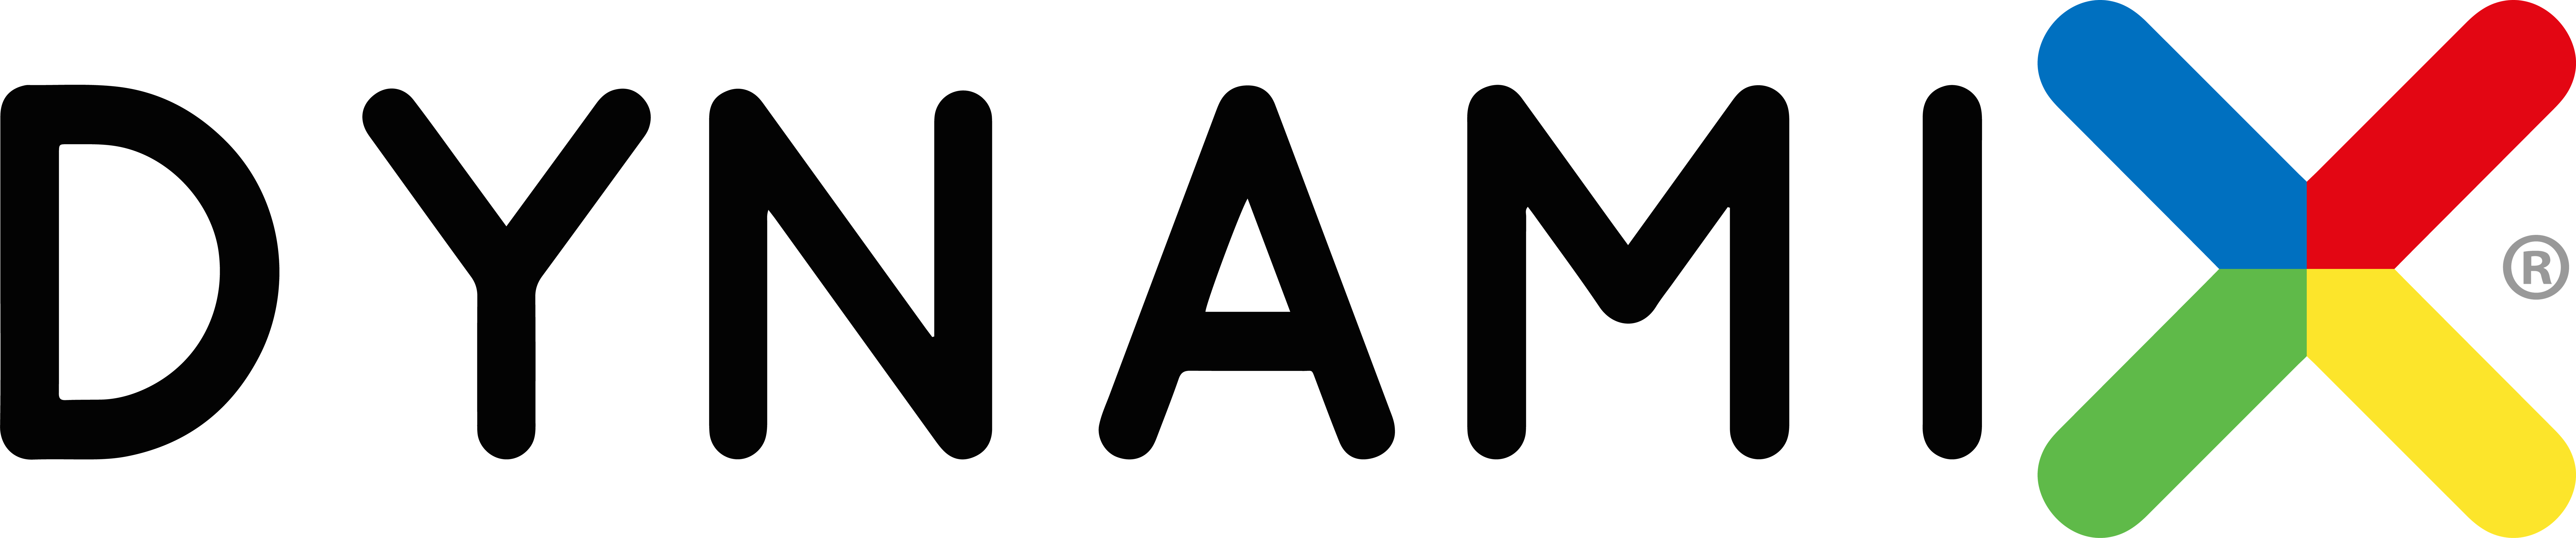 dynamix-logo